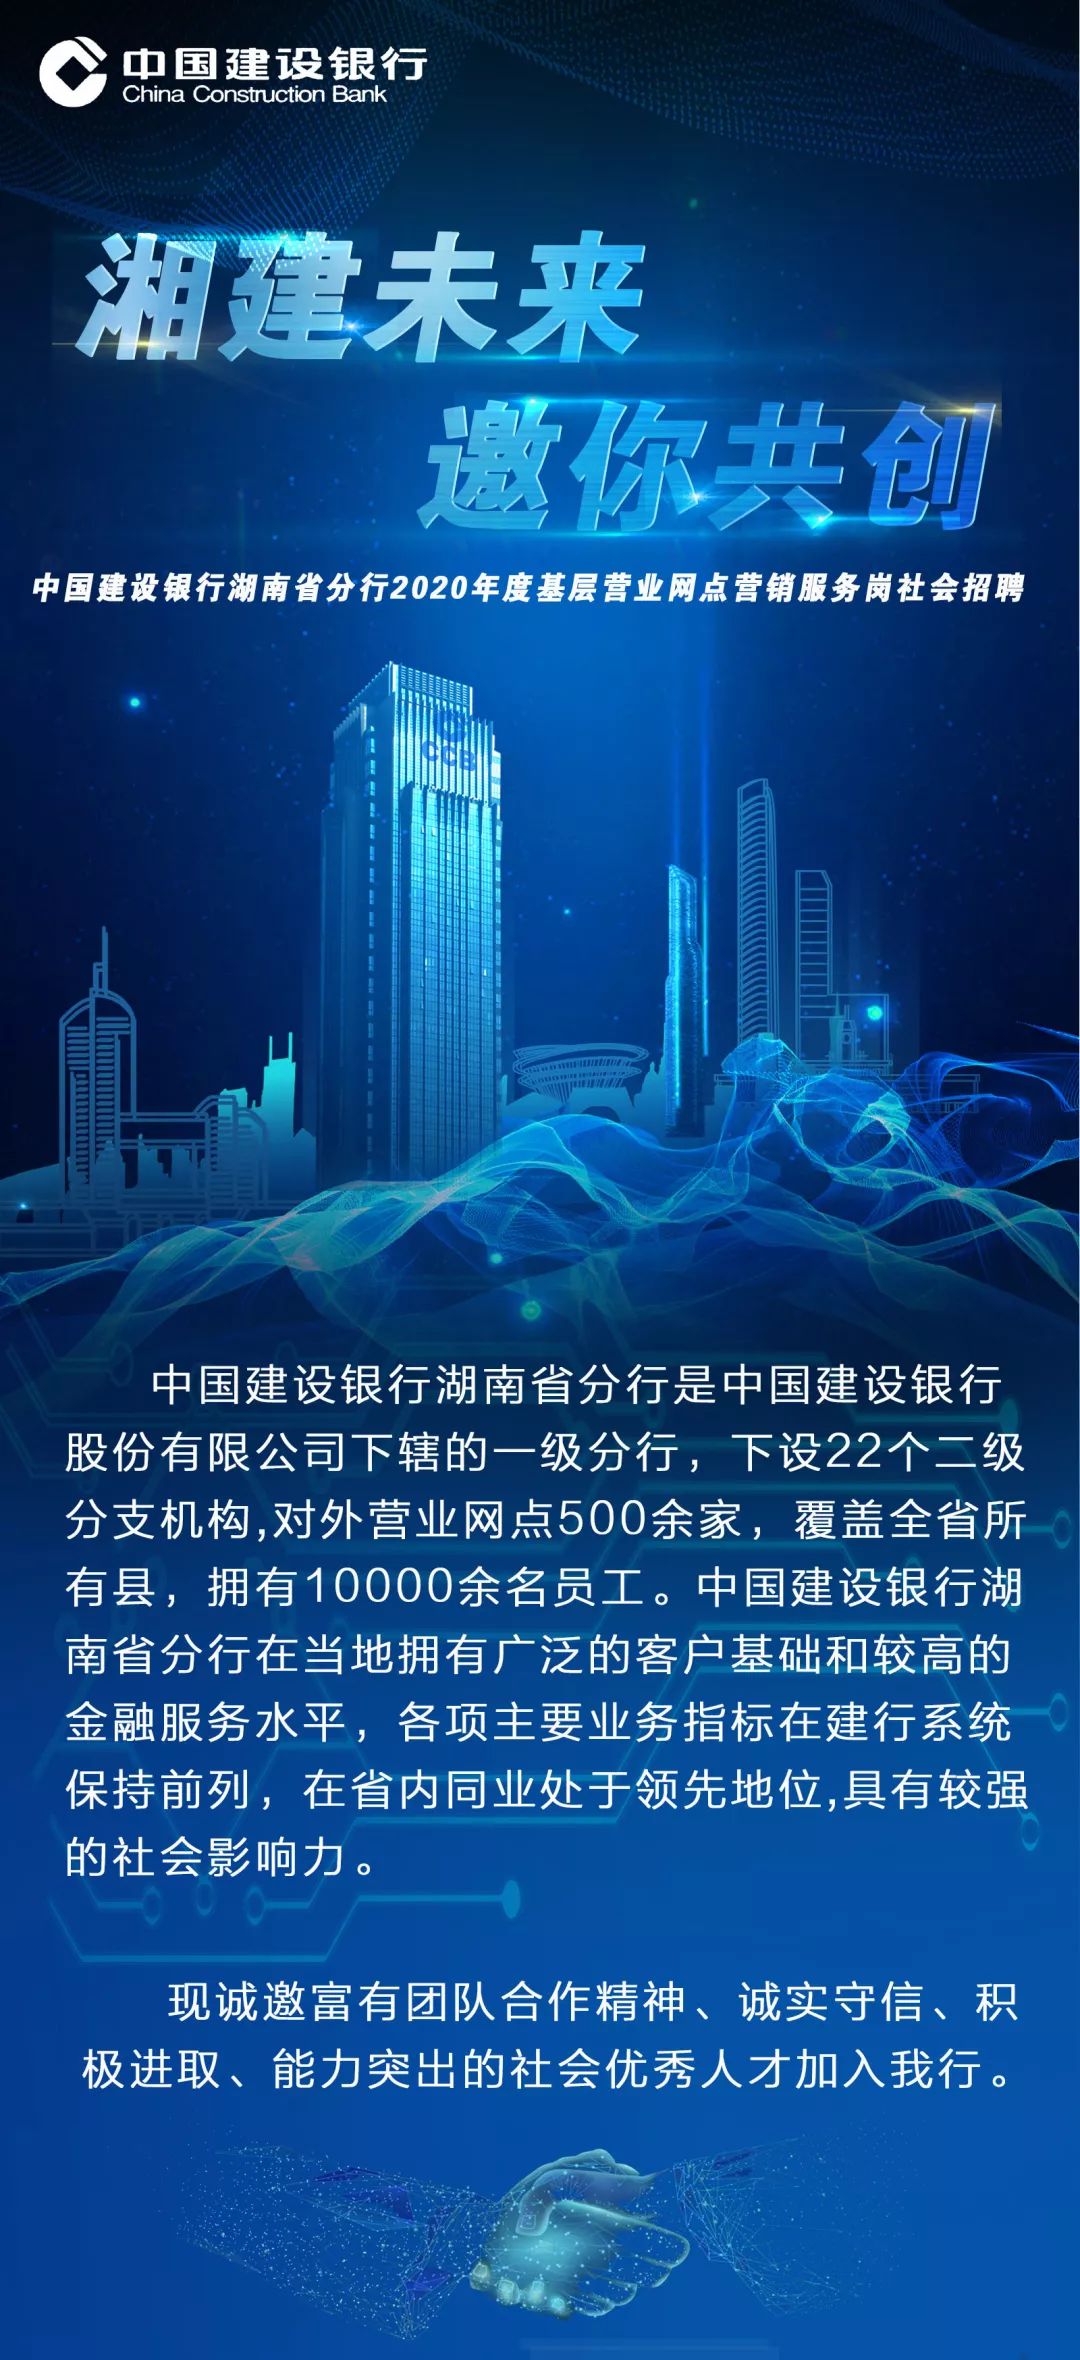 中国建设银行湖南省分行2020年度基层营业网点营销服务岗社会招聘